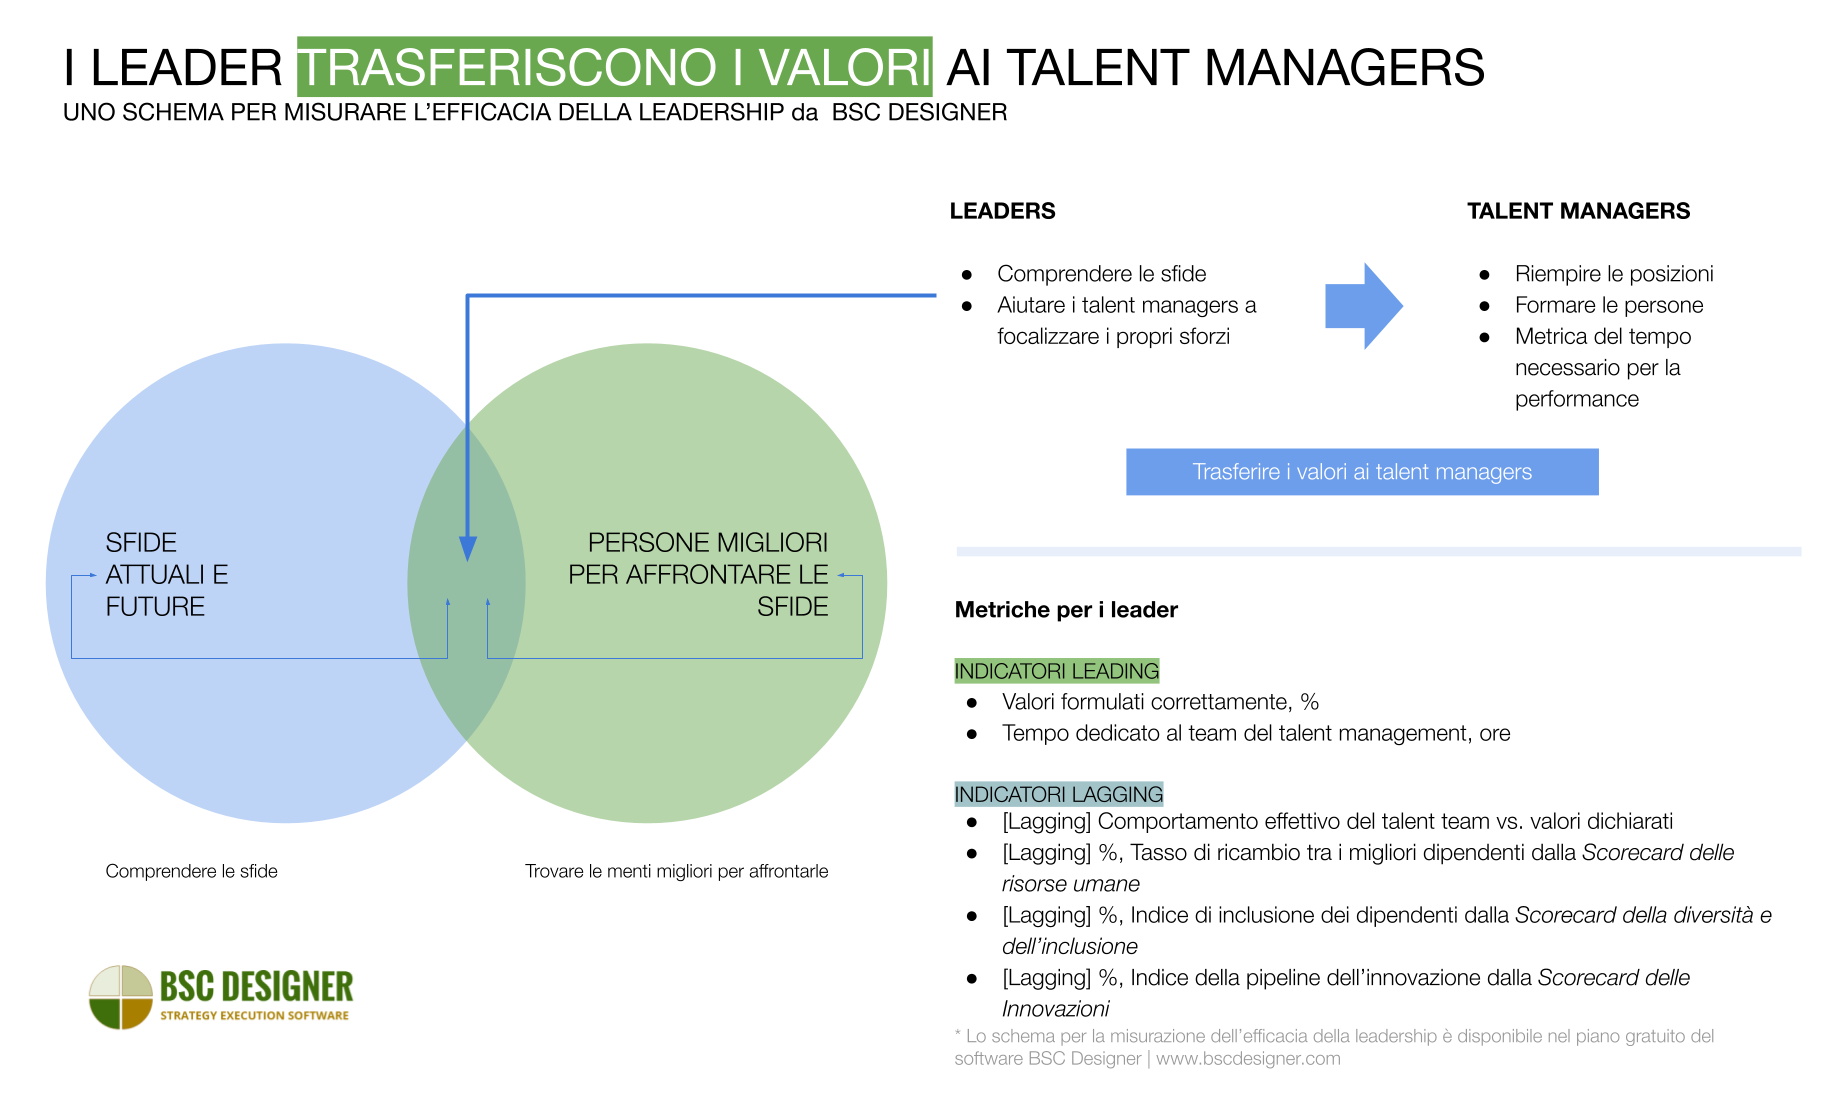 Il ruolo dei leader nella gestione dei talenti